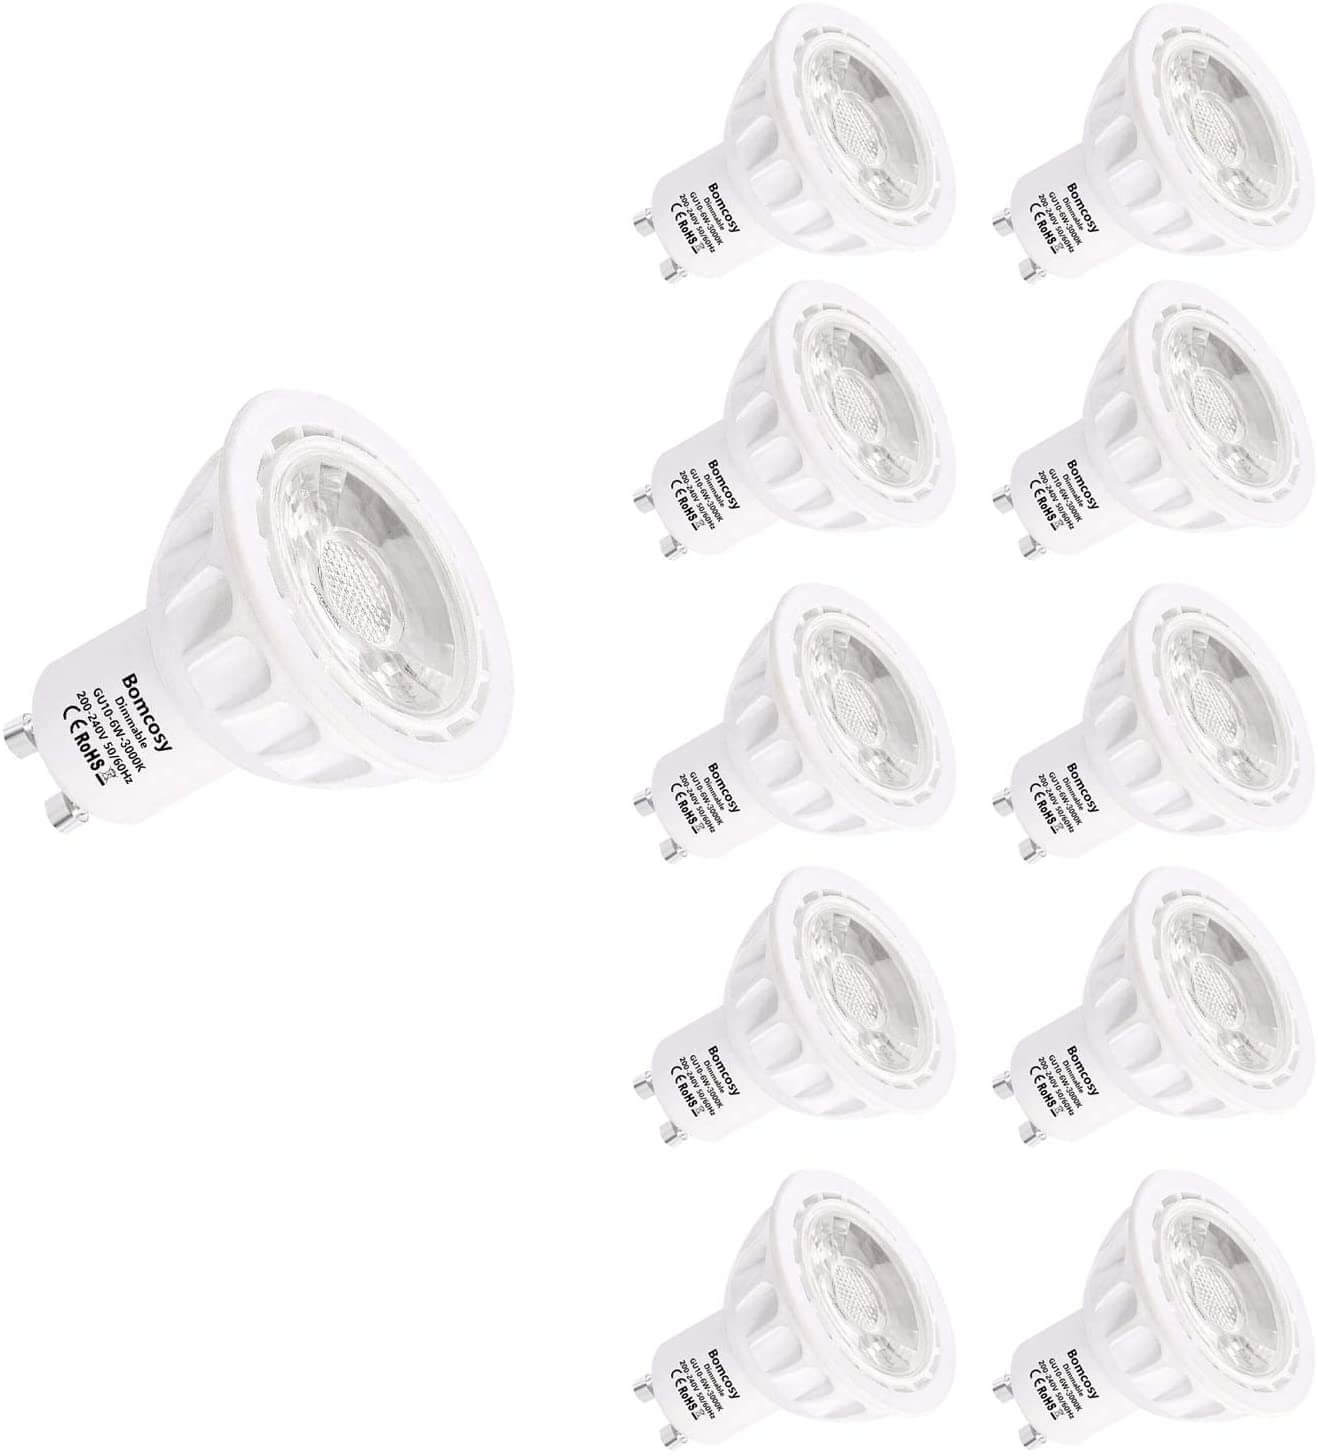 Bonlux Ampoules LED GU10 Dimmable, GU10 LED Blanc Chaud Ampoule 3000K, 5W  équivalent 50W Lampe Halogène, AC 230V 400LM Ampoule LED Spot Culot GU10,  38° Larges Faisceaux pour Salon(Lot de 10) 